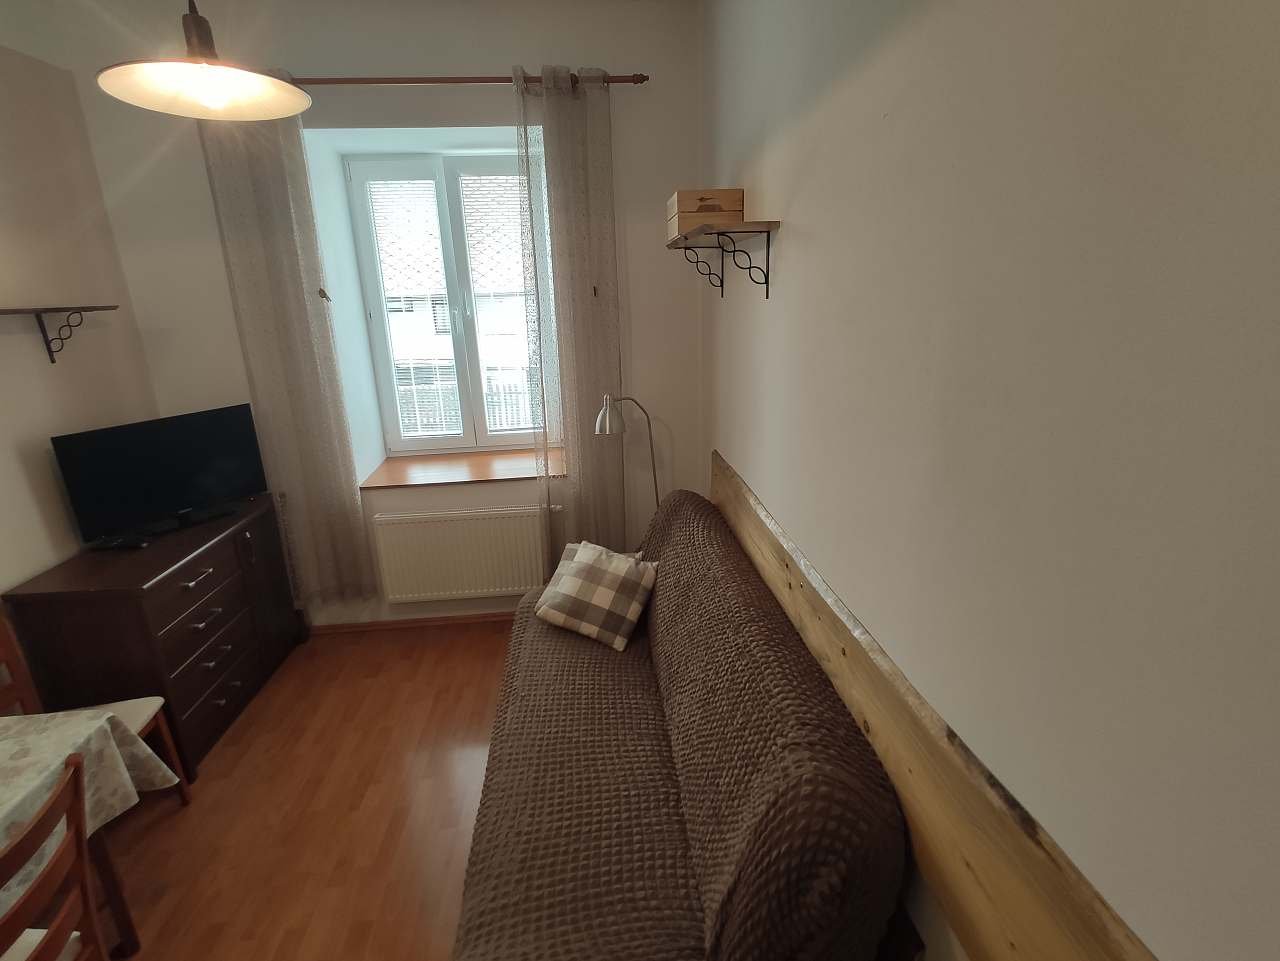 Apartmán - obývací pokoj s kuchyní